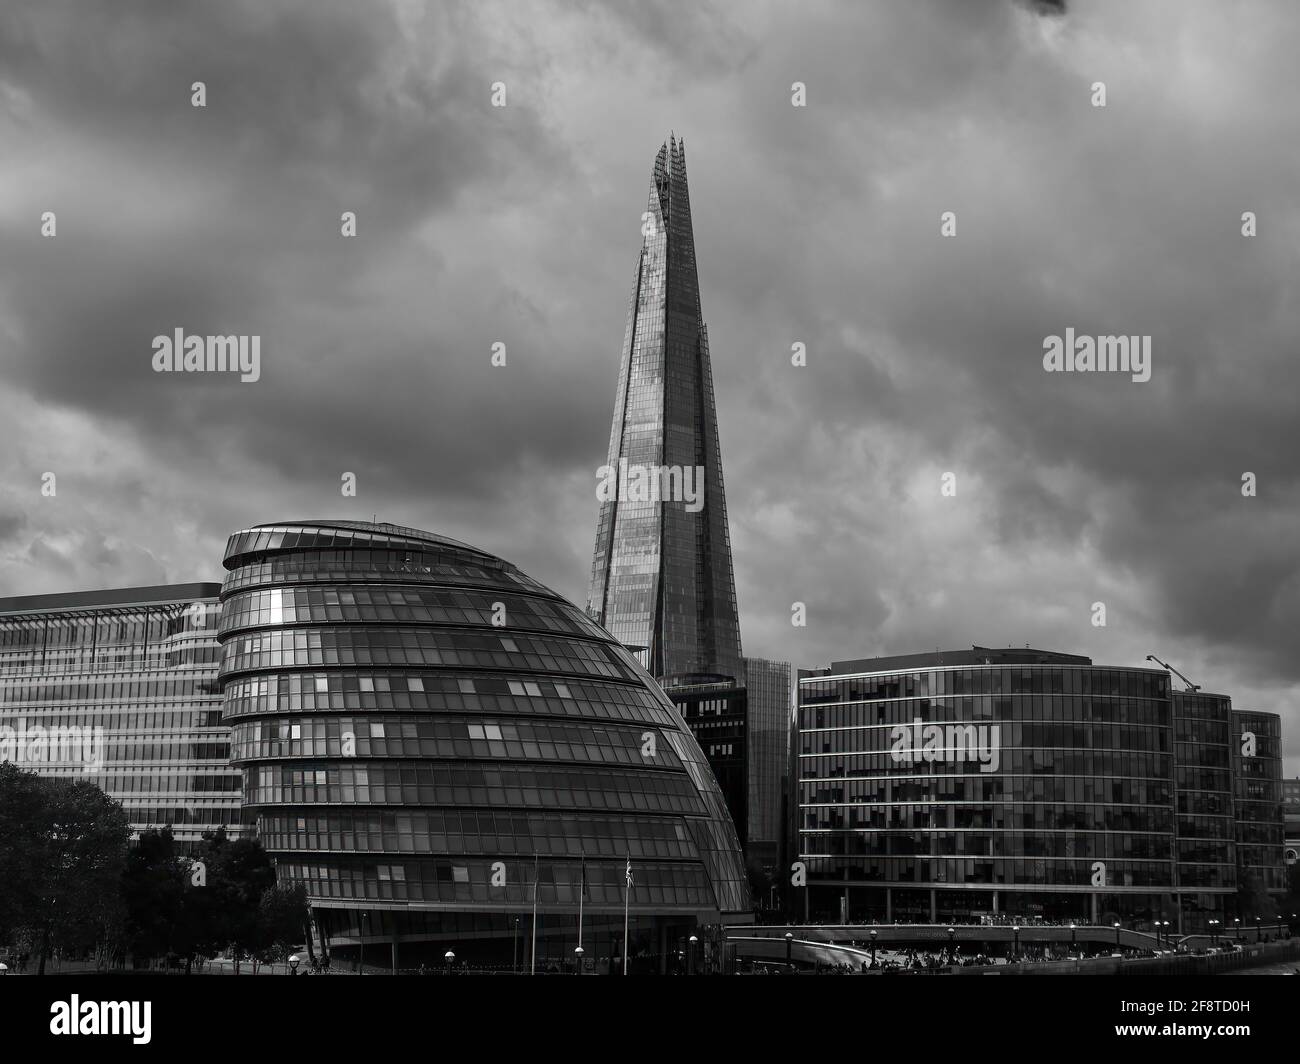 El complejo de gobierno local de la Gran Asamblea de Londres y el rascacielos Shard delante de un cielo espectacular y nublado. Foto de stock